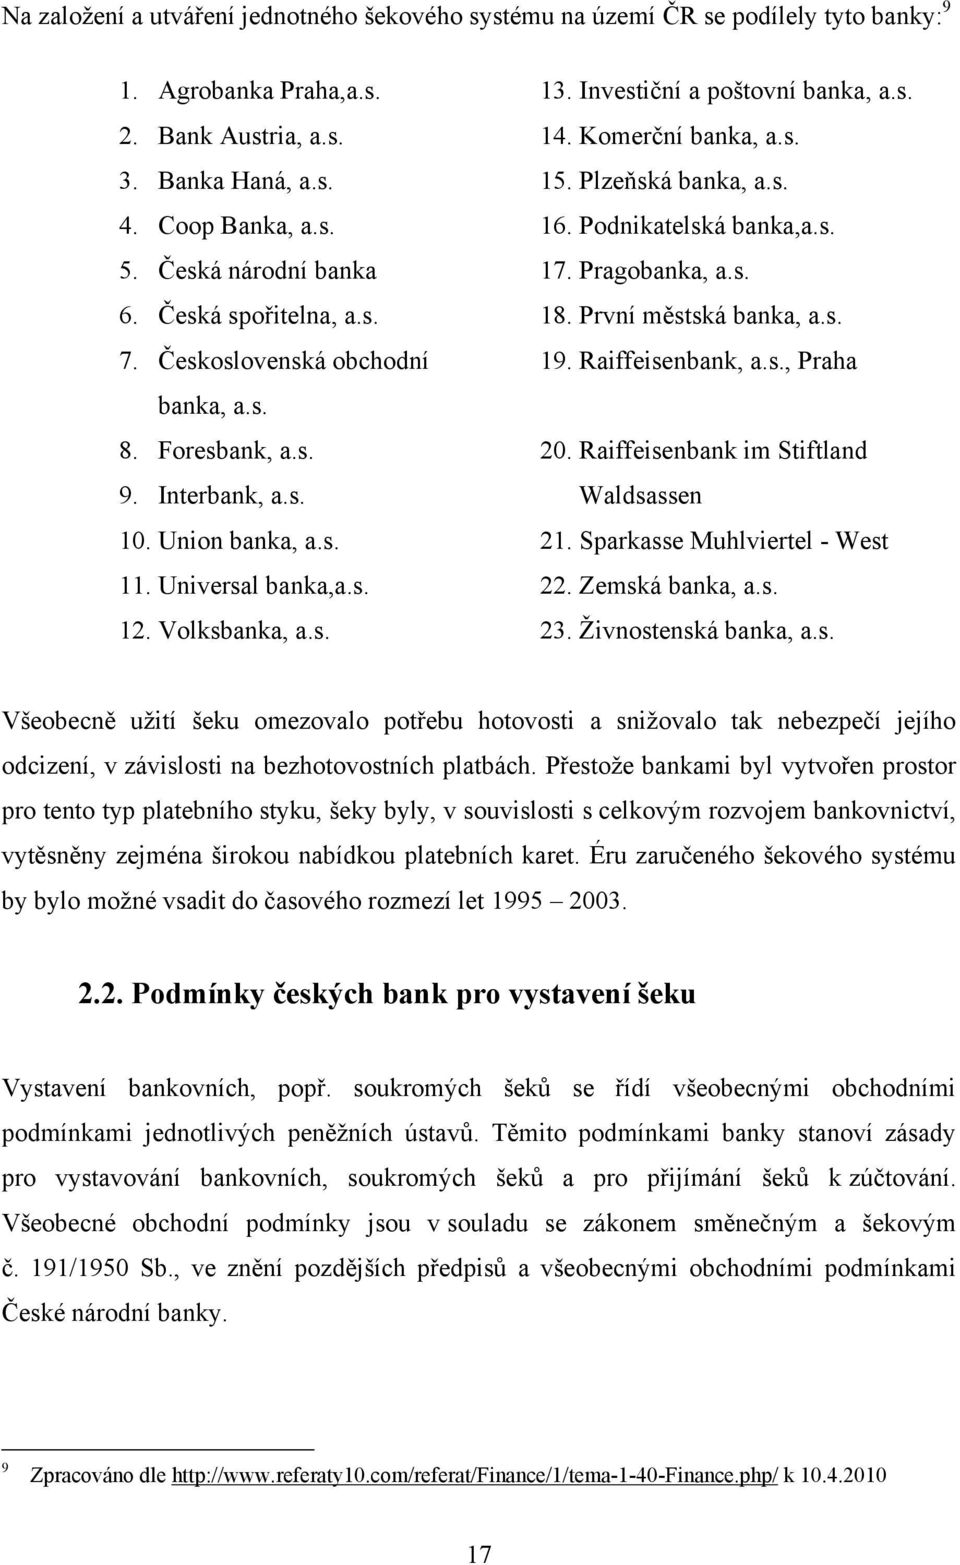 Československá obchodní 19. Raiffeisenbank, a.s., Praha banka, a.s. 8. Foresbank, a.s. 20. Raiffeisenbank im Stiftland 9. Interbank, a.s. Waldsassen 10. Union banka, a.s. 21.